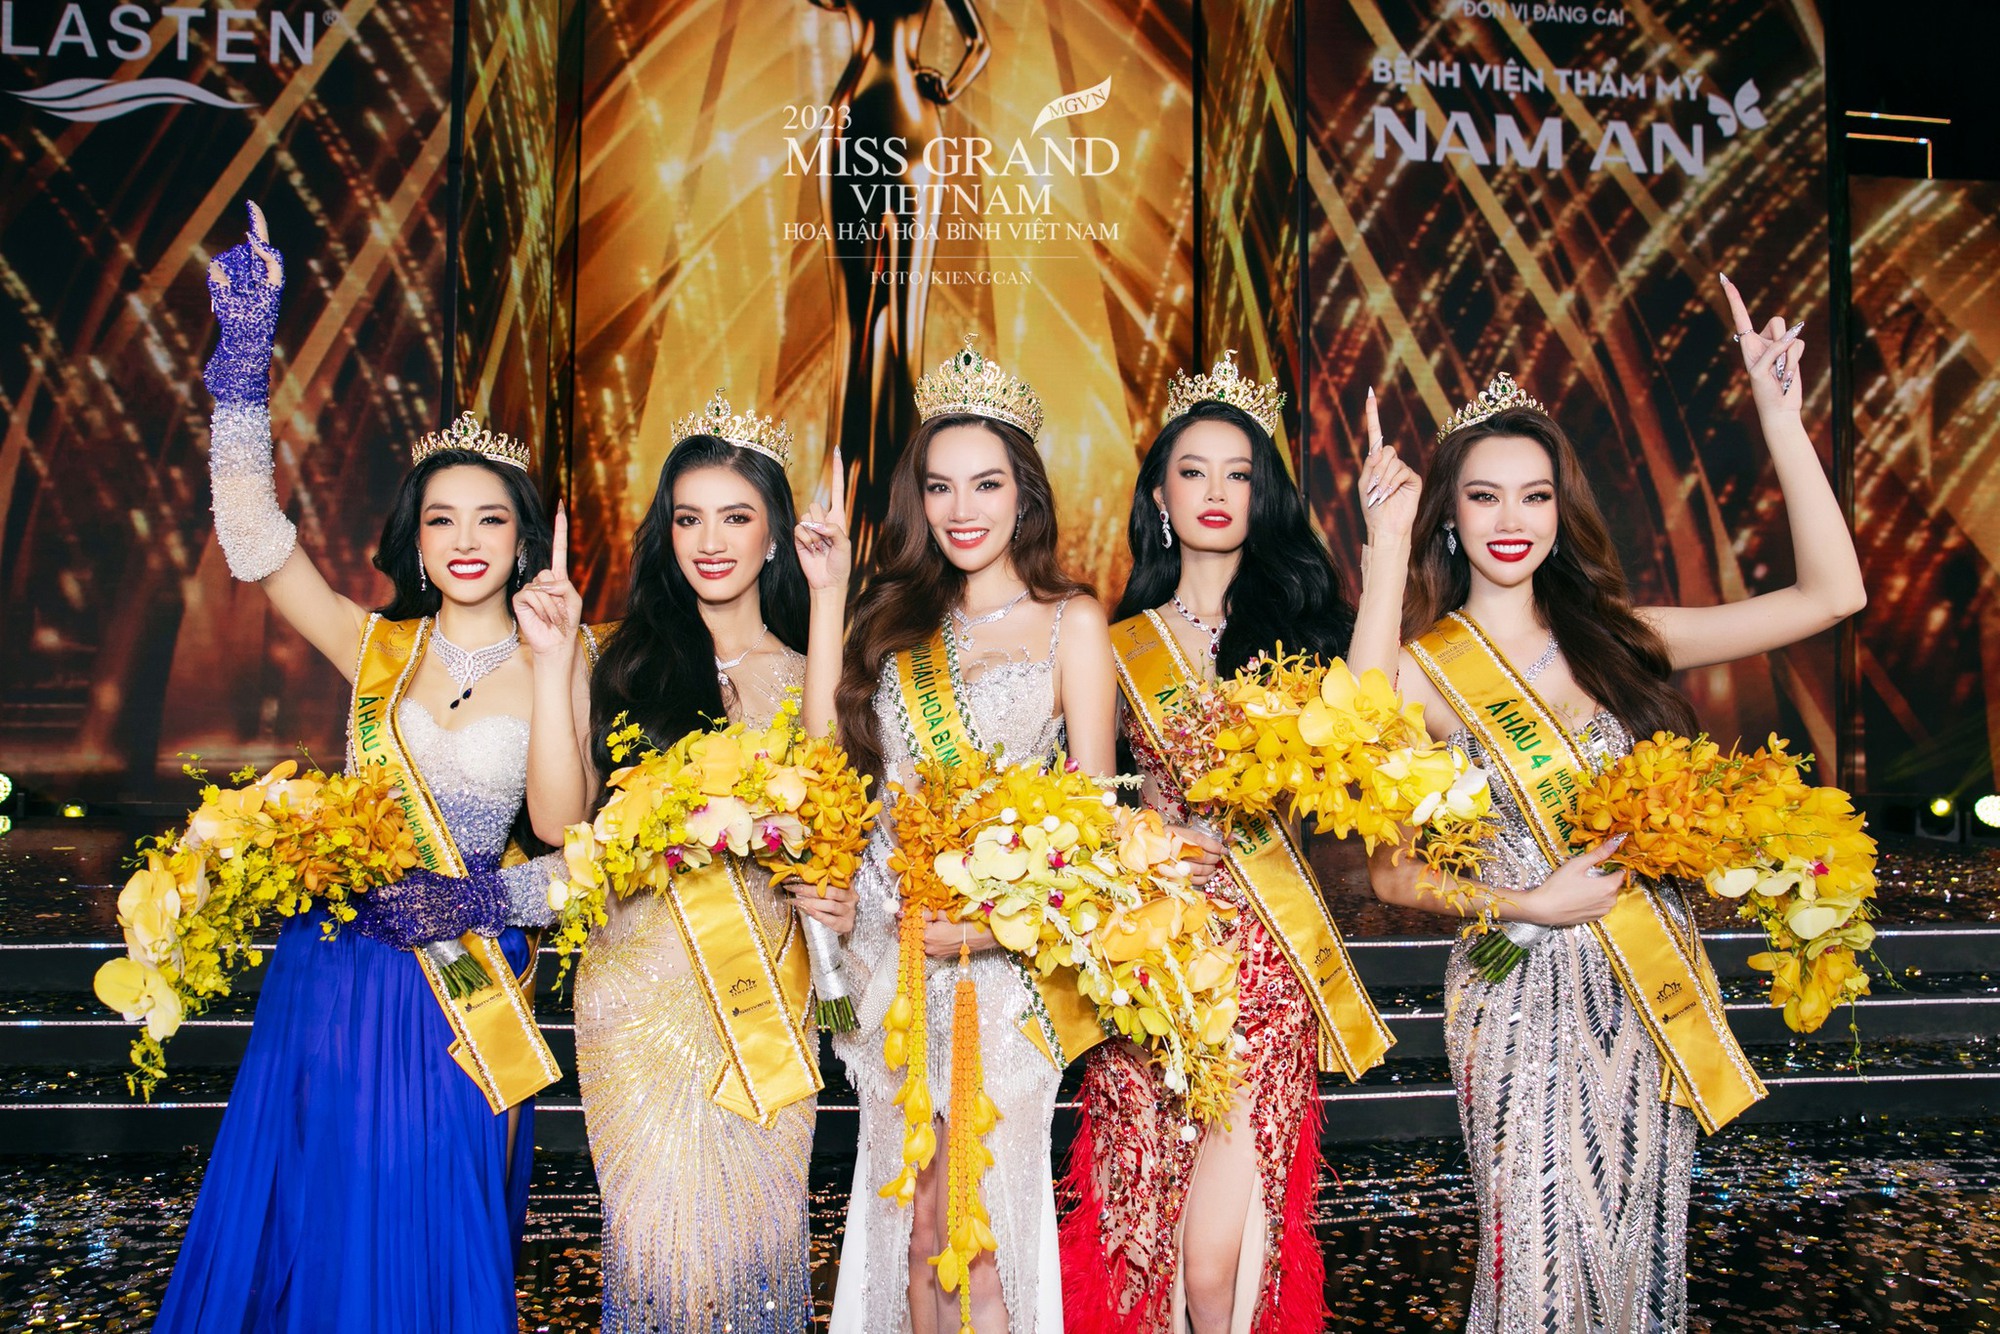 Khung ảnh bùng nổ nhan sắc của Top 5 Miss Grand Vietnam, Lê Hoàng Phương và Bùi Khánh Linh so kè visual căng đét - Ảnh 4.